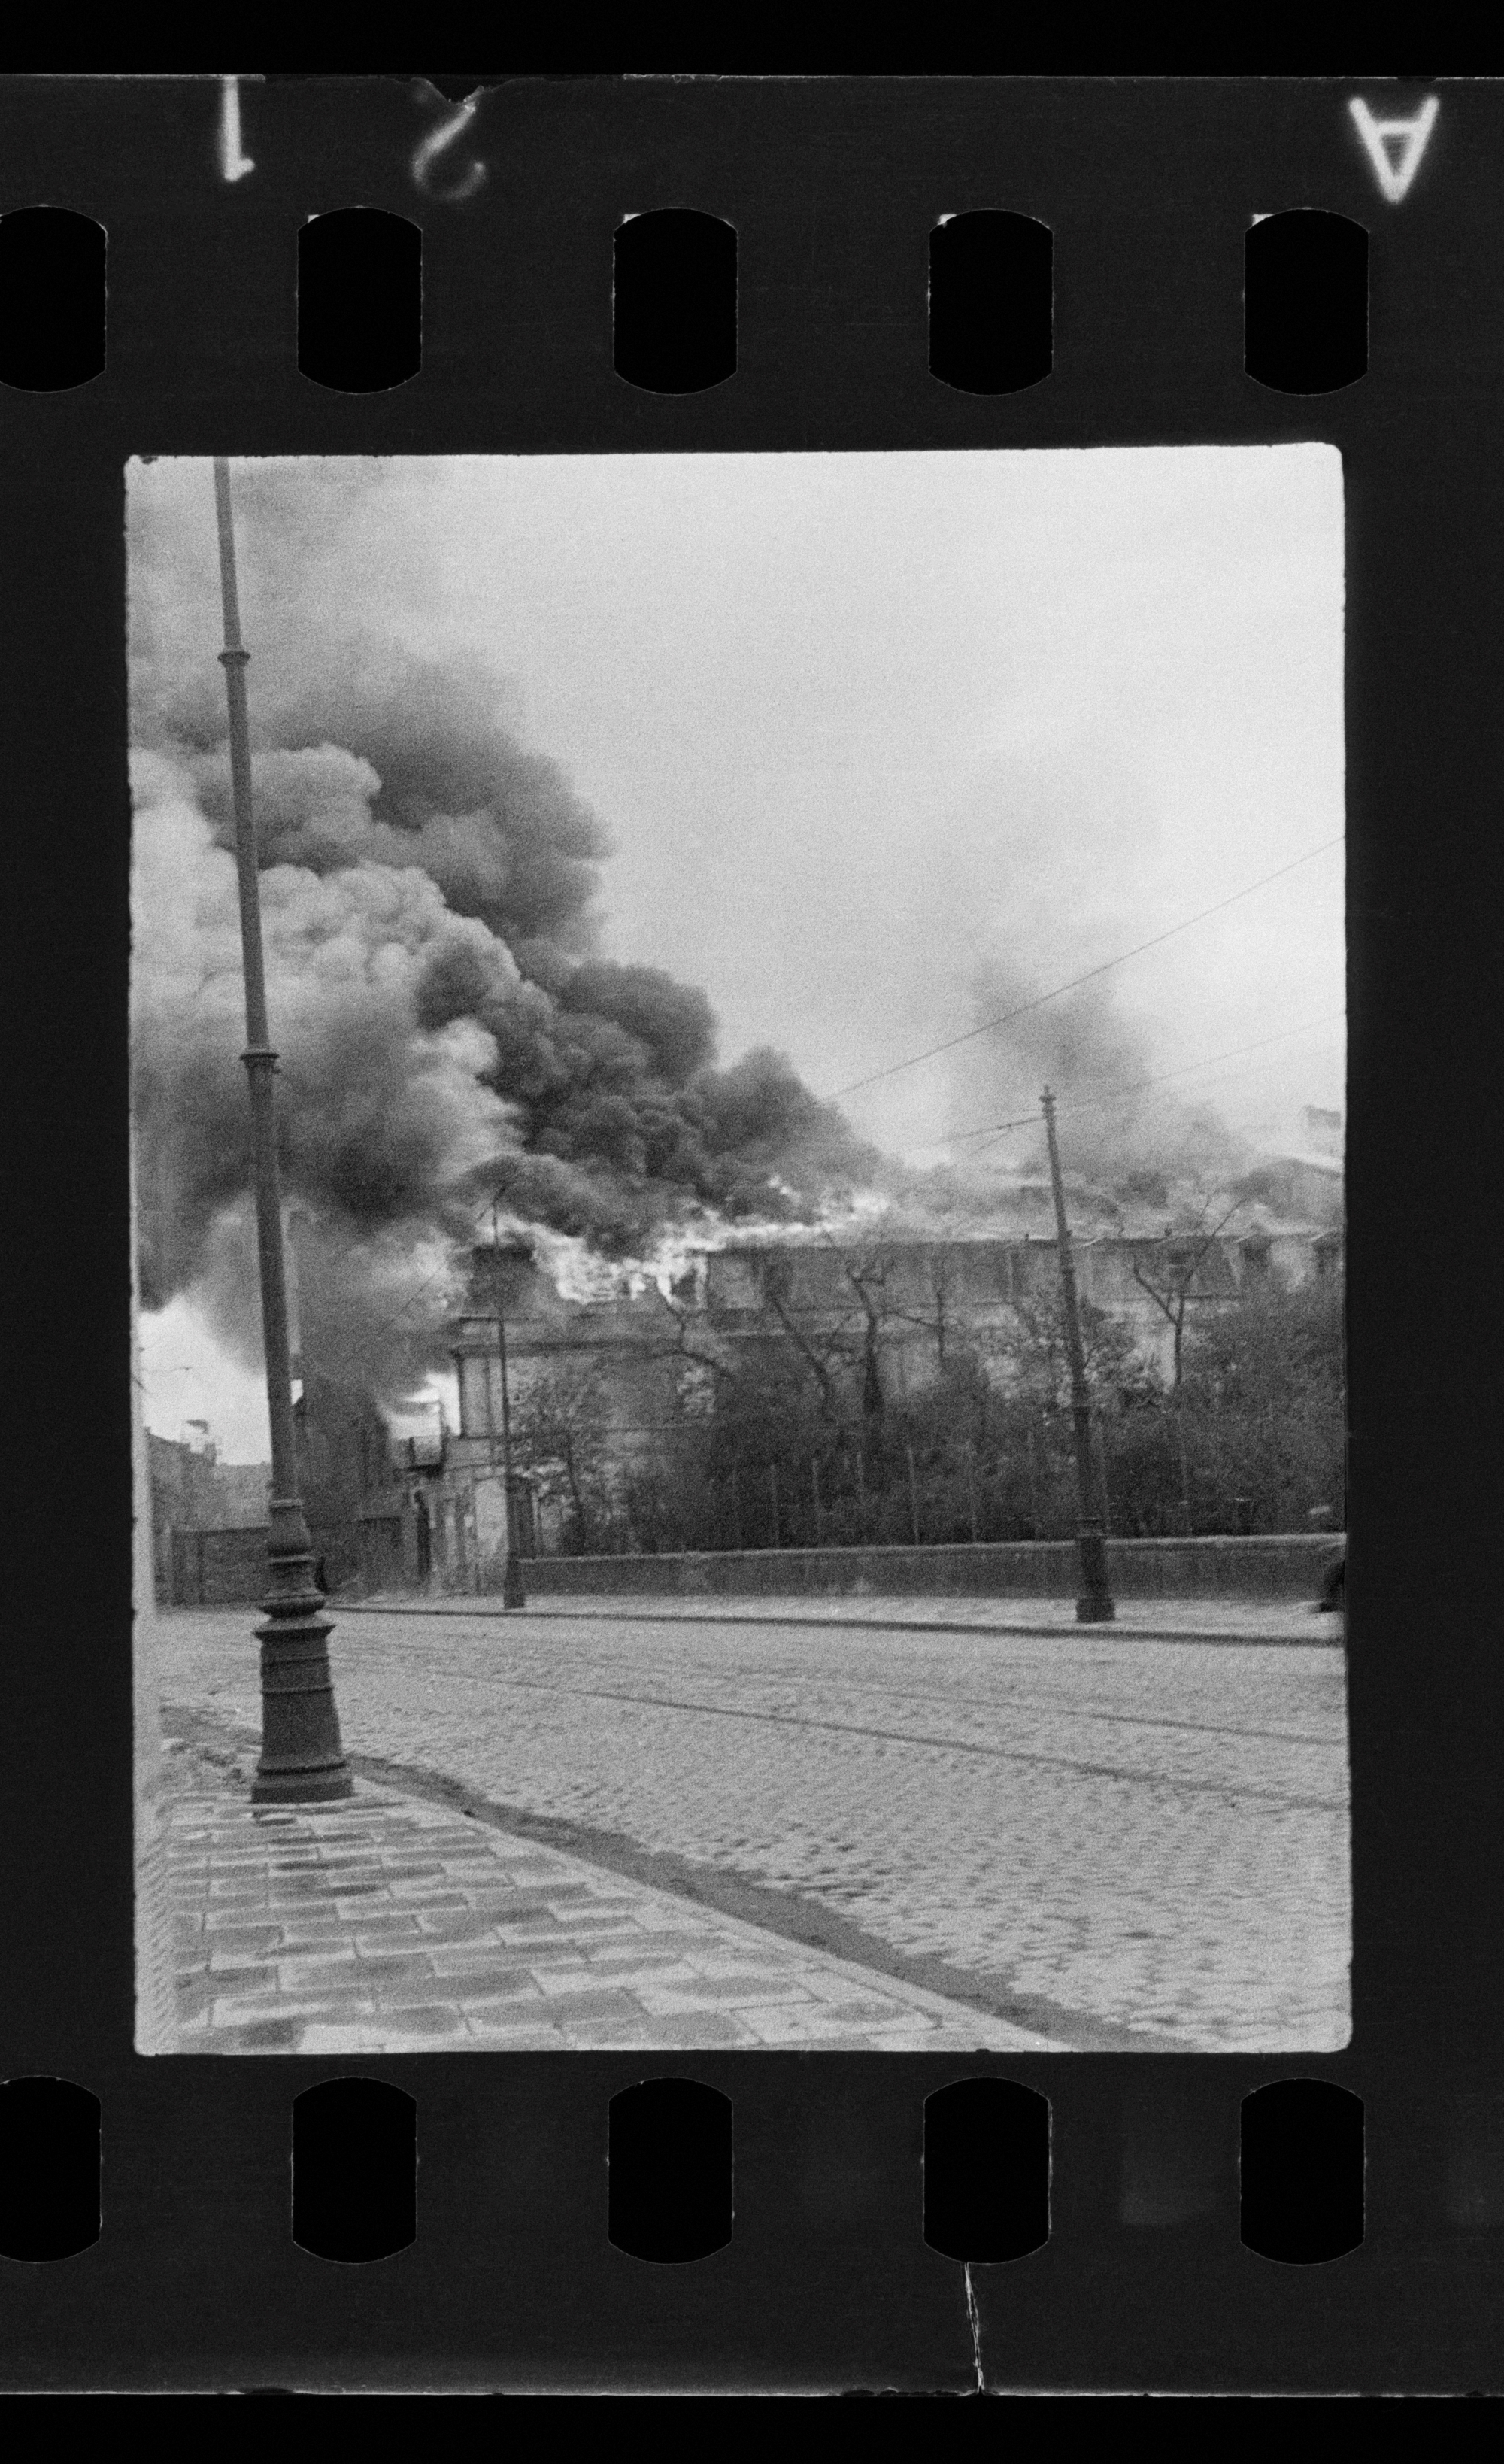 Ulica Nalewki, przy Ogrodzie Krasińskich. Dym nad gettem warszawskim. / Nalewki Street next to Ogród Krasińskich. The Ghetto in flames.